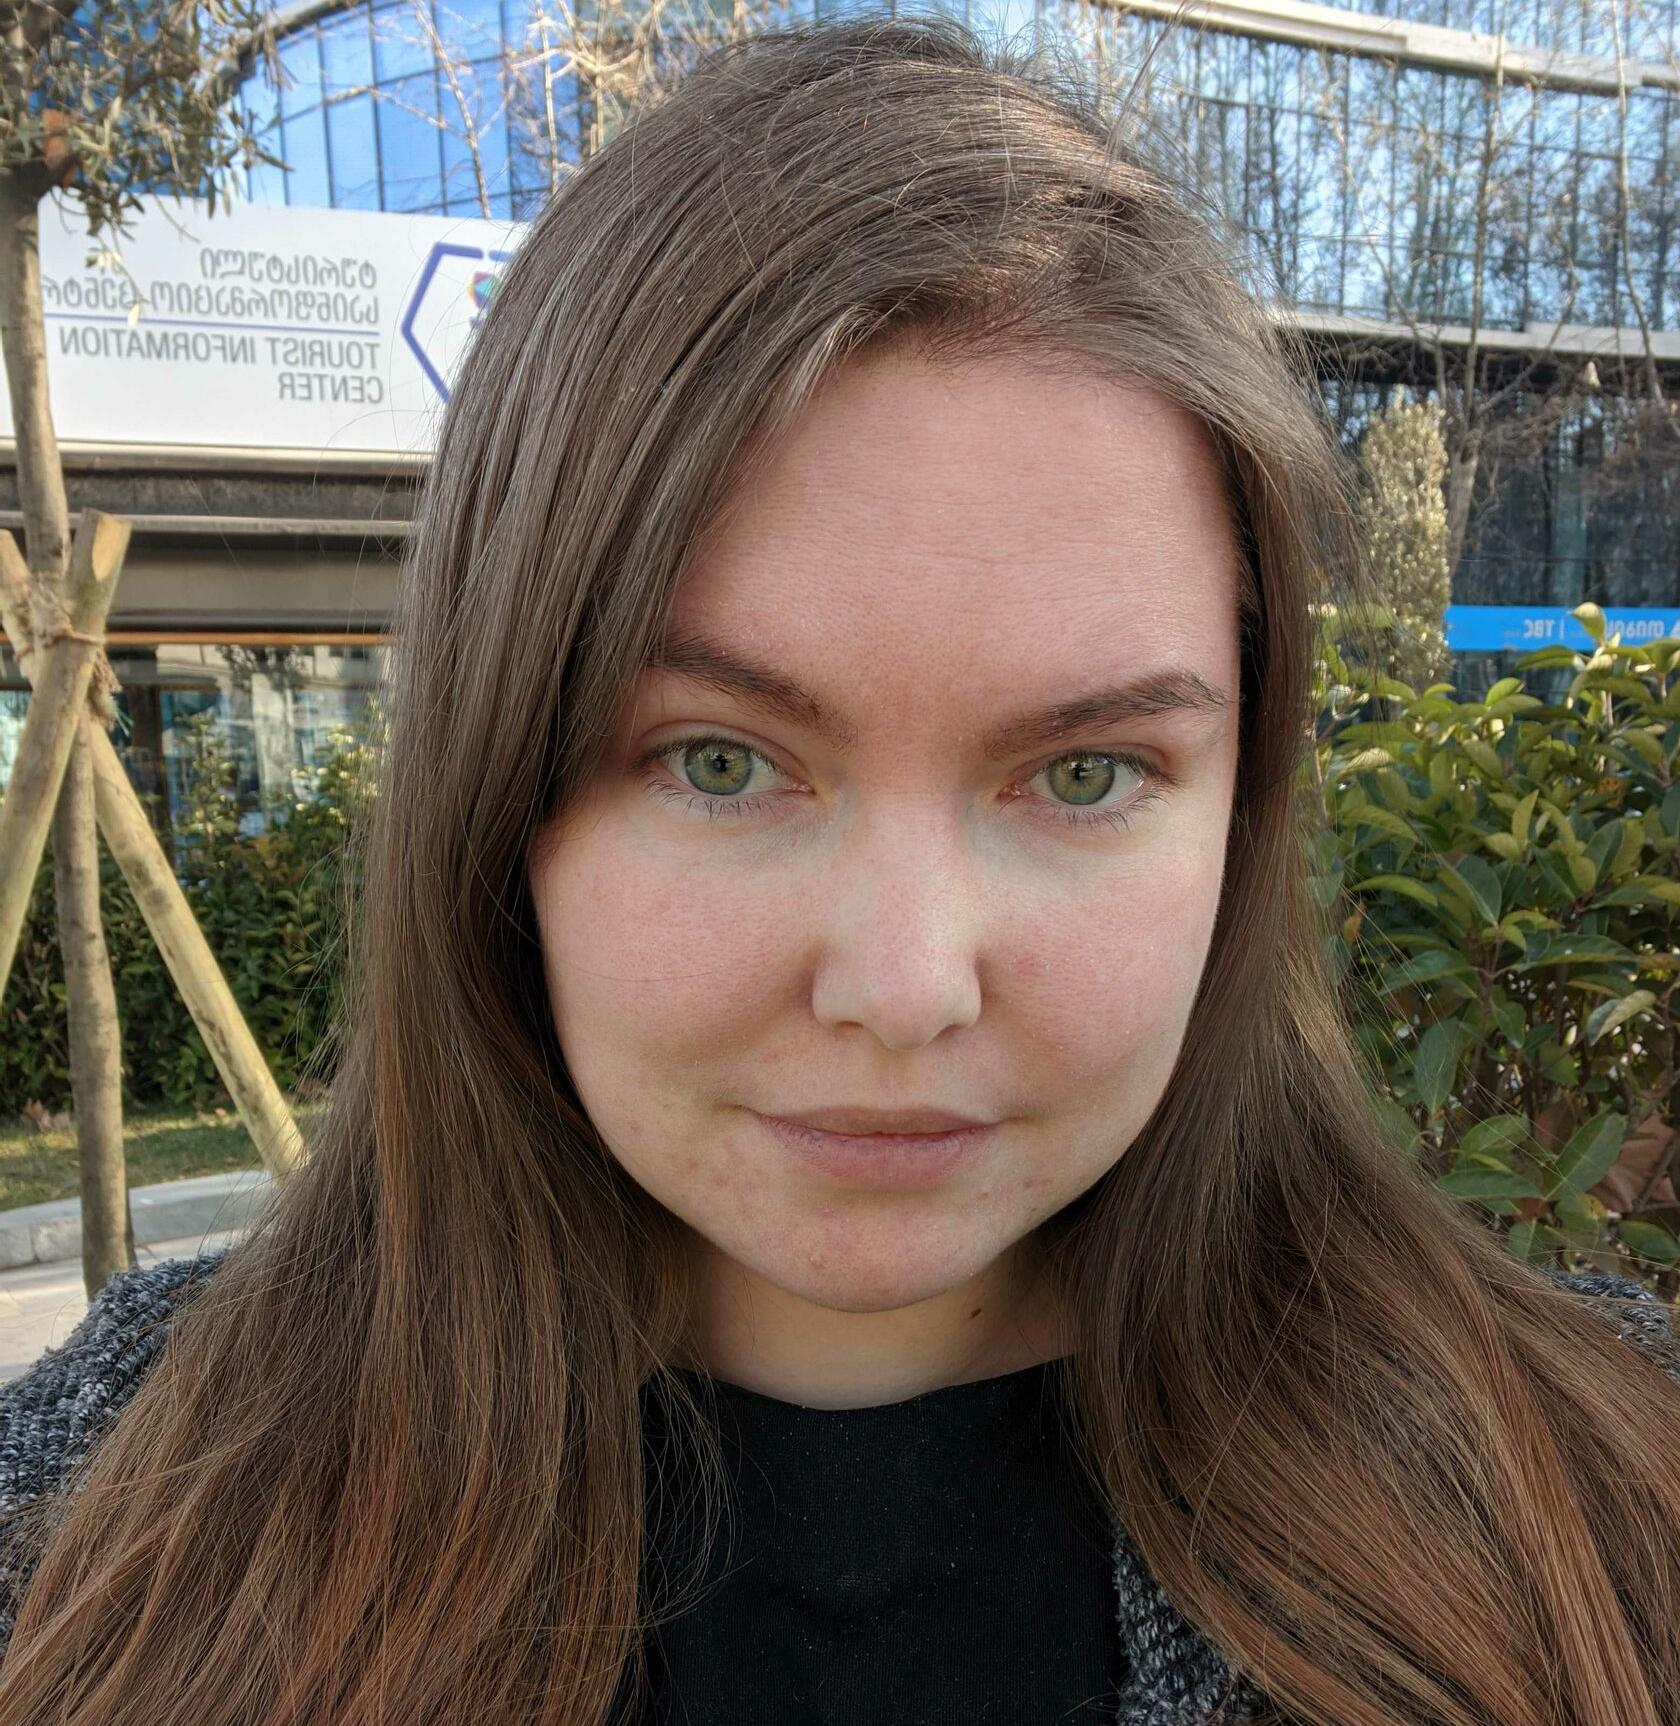 Александра Трофимова - Айтигенио – Онлайн курсы по веб-дизайну и созданию сайтов в Figma и Tilda для детей 9-18 лет